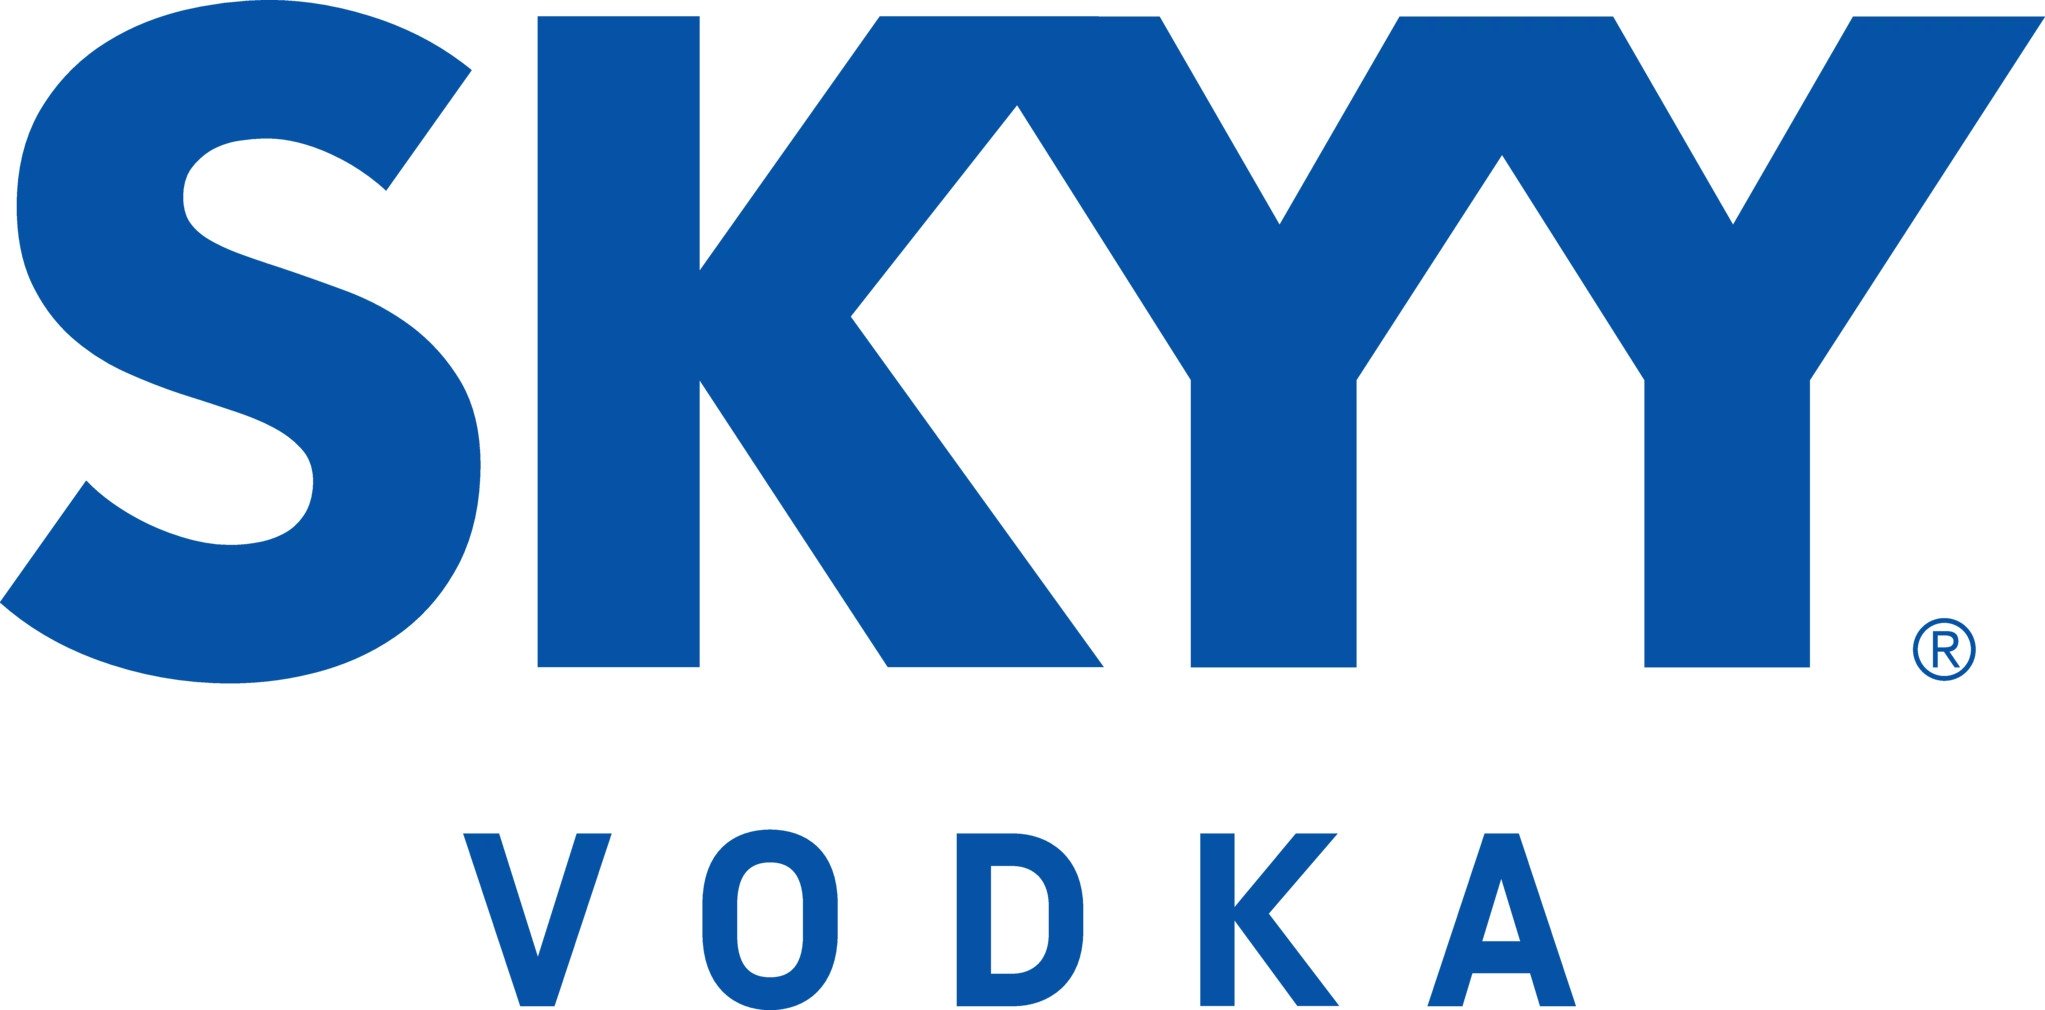 SKYY Vodka Primary (Blue Lockup) - Logo.jpg